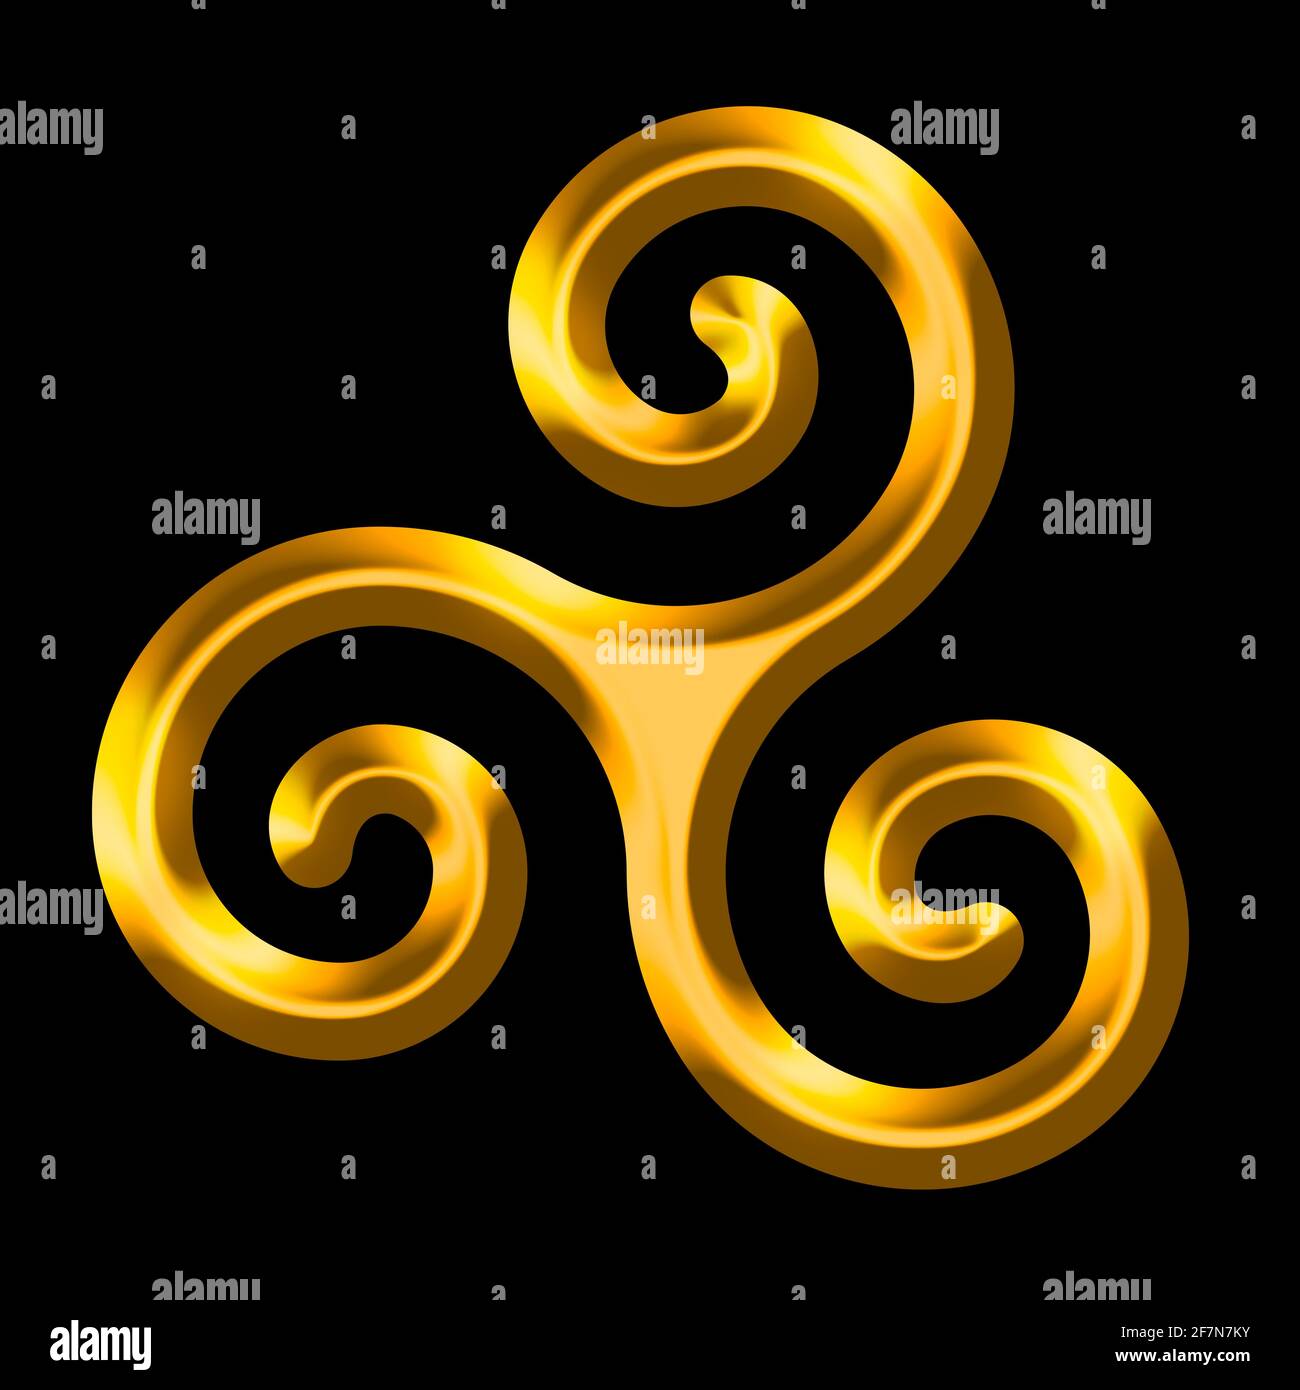 Golden triskele sur fond noir. Triskelion, ancien symbole et motif composé d'une triple spirale, montrant la symétrie rotationnelle. Banque D'Images